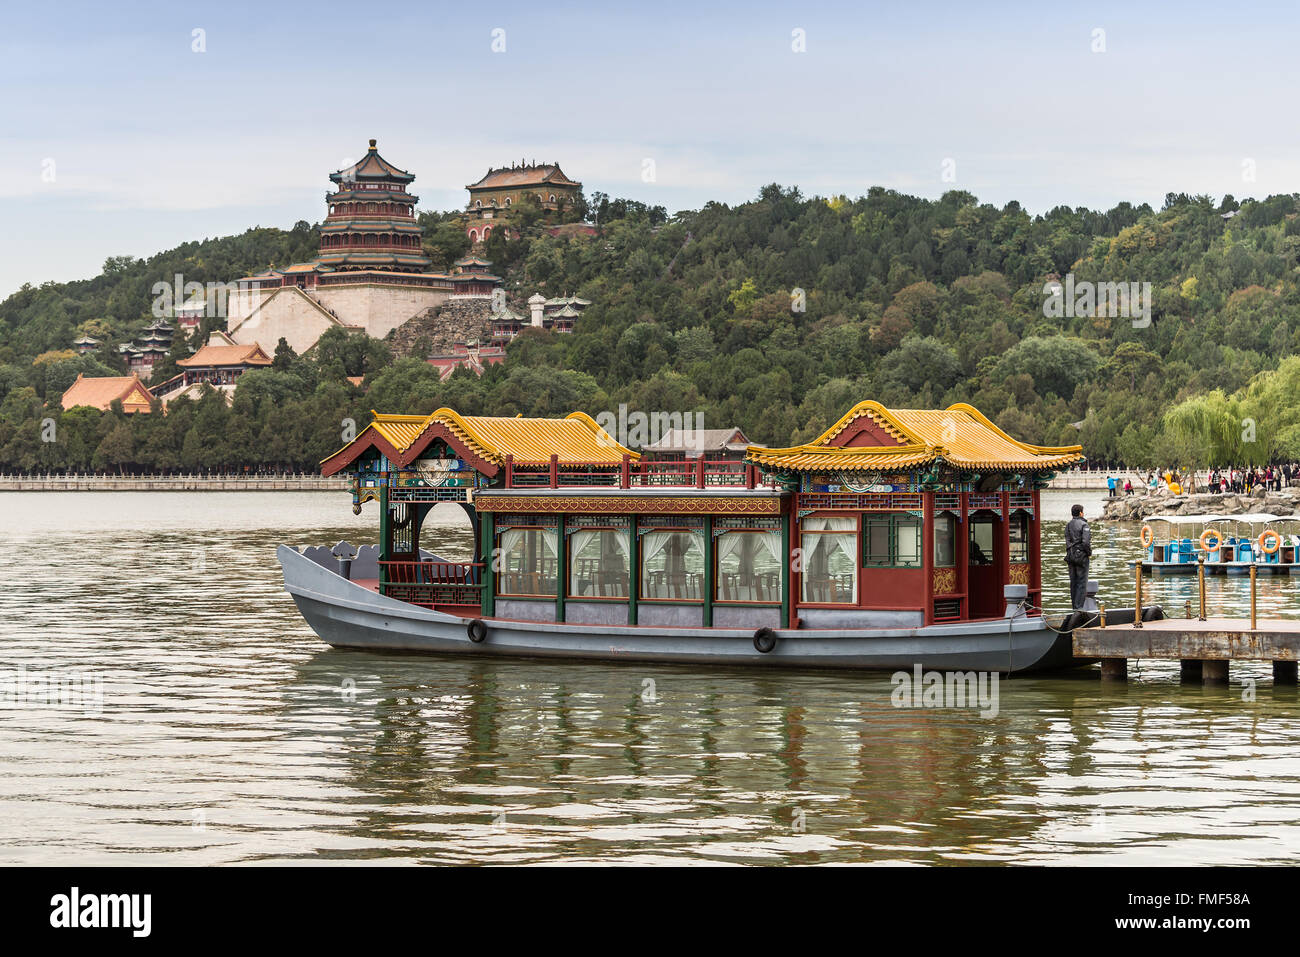 Il vecchio traghetto tradizionale barca nel lago a Palazzo d'Estate a Pechino in Cina. Foto Stock